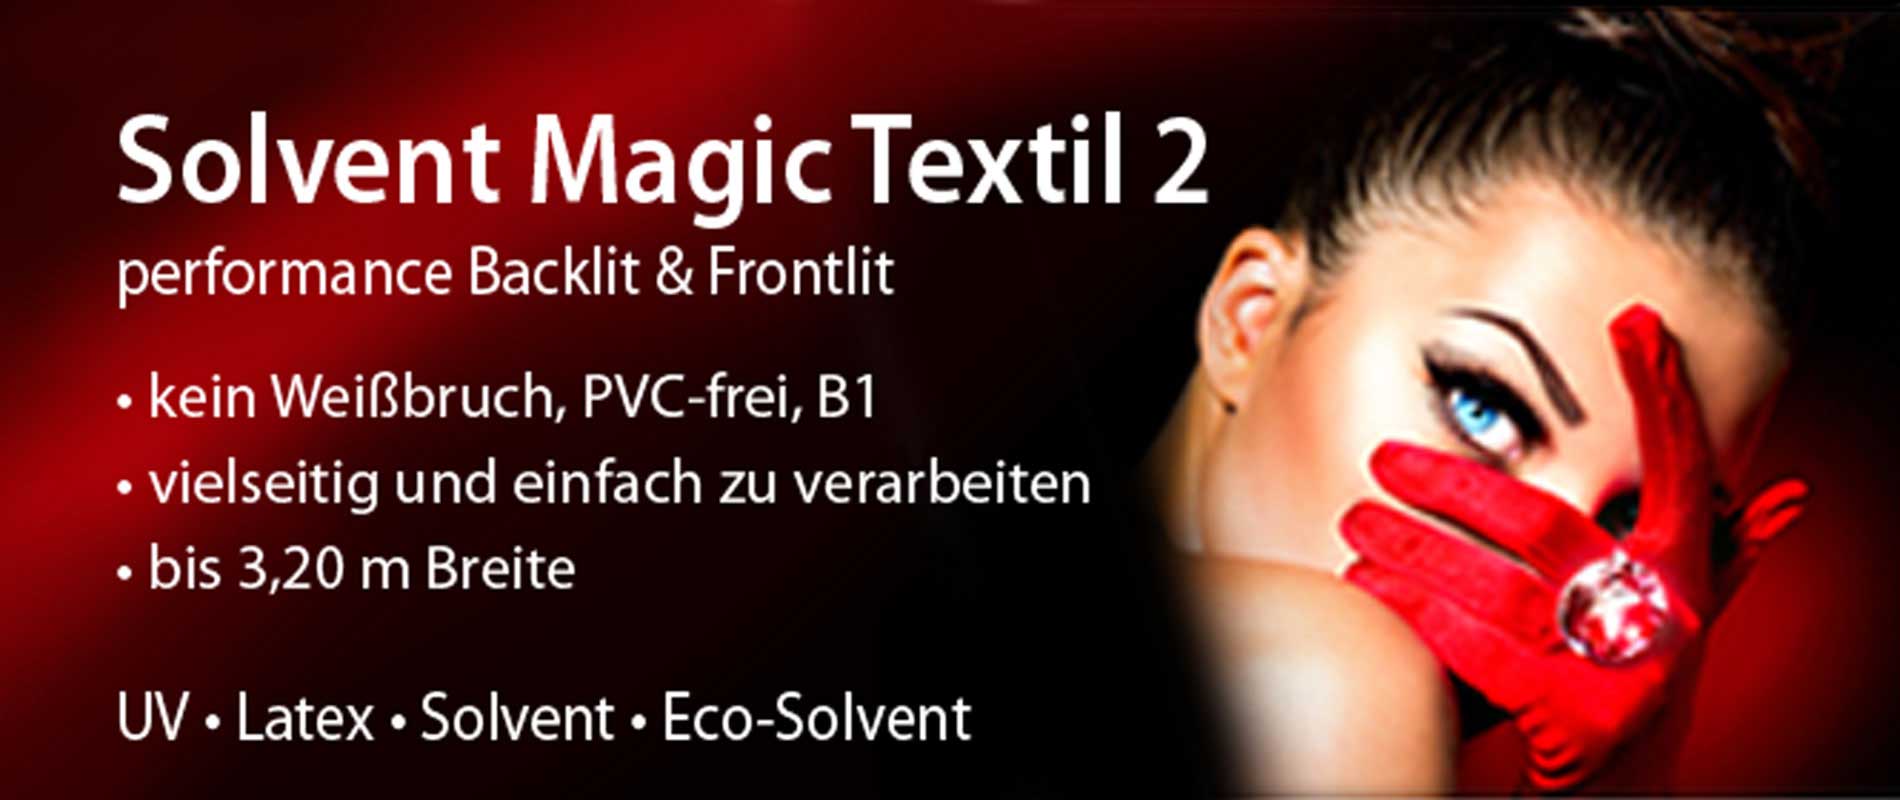 EMBLEM Solvent Magic Textile II